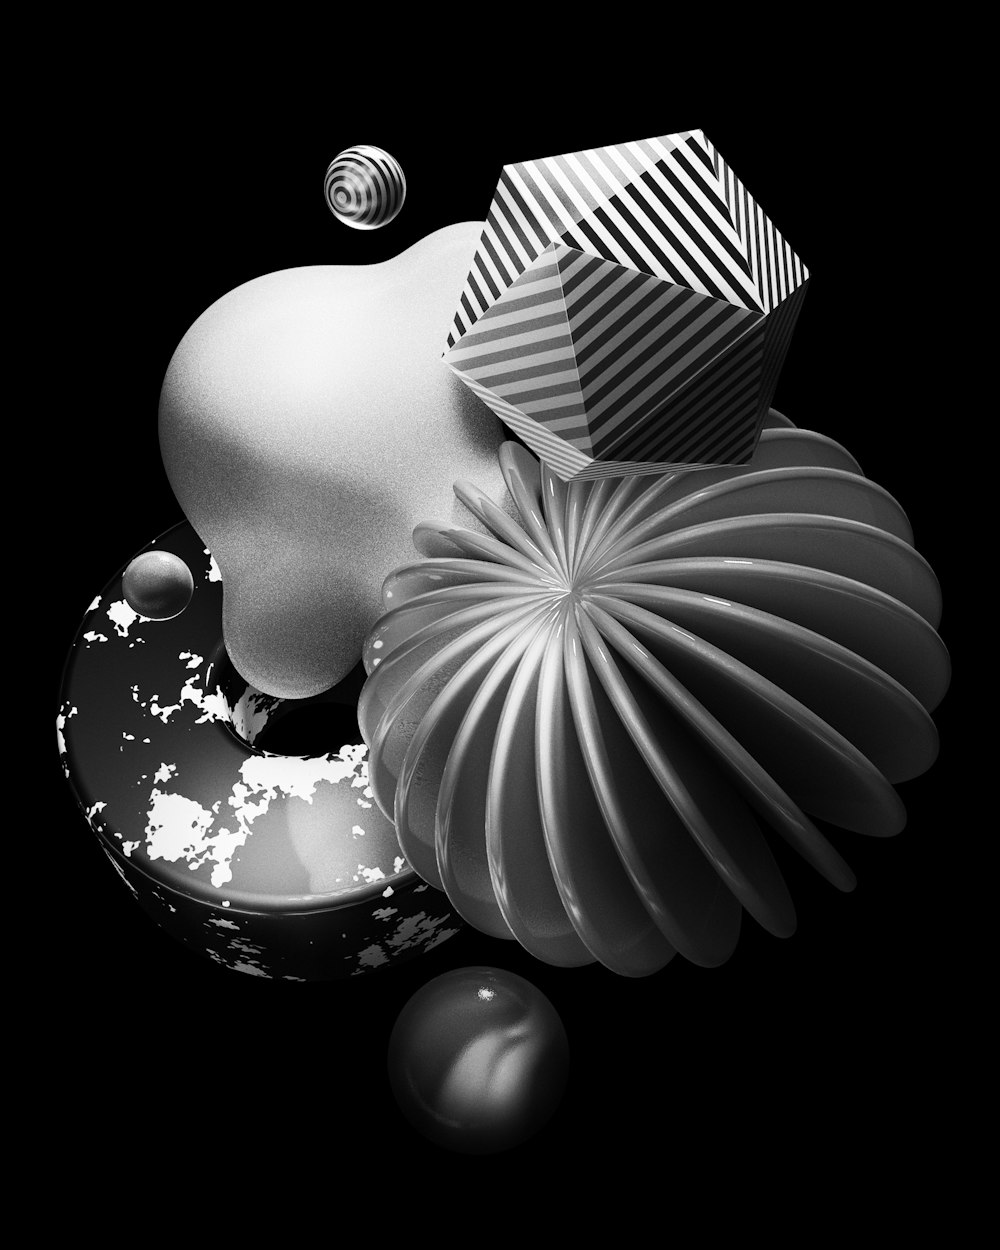 une photo en noir et blanc d’un vase et de quelques boules